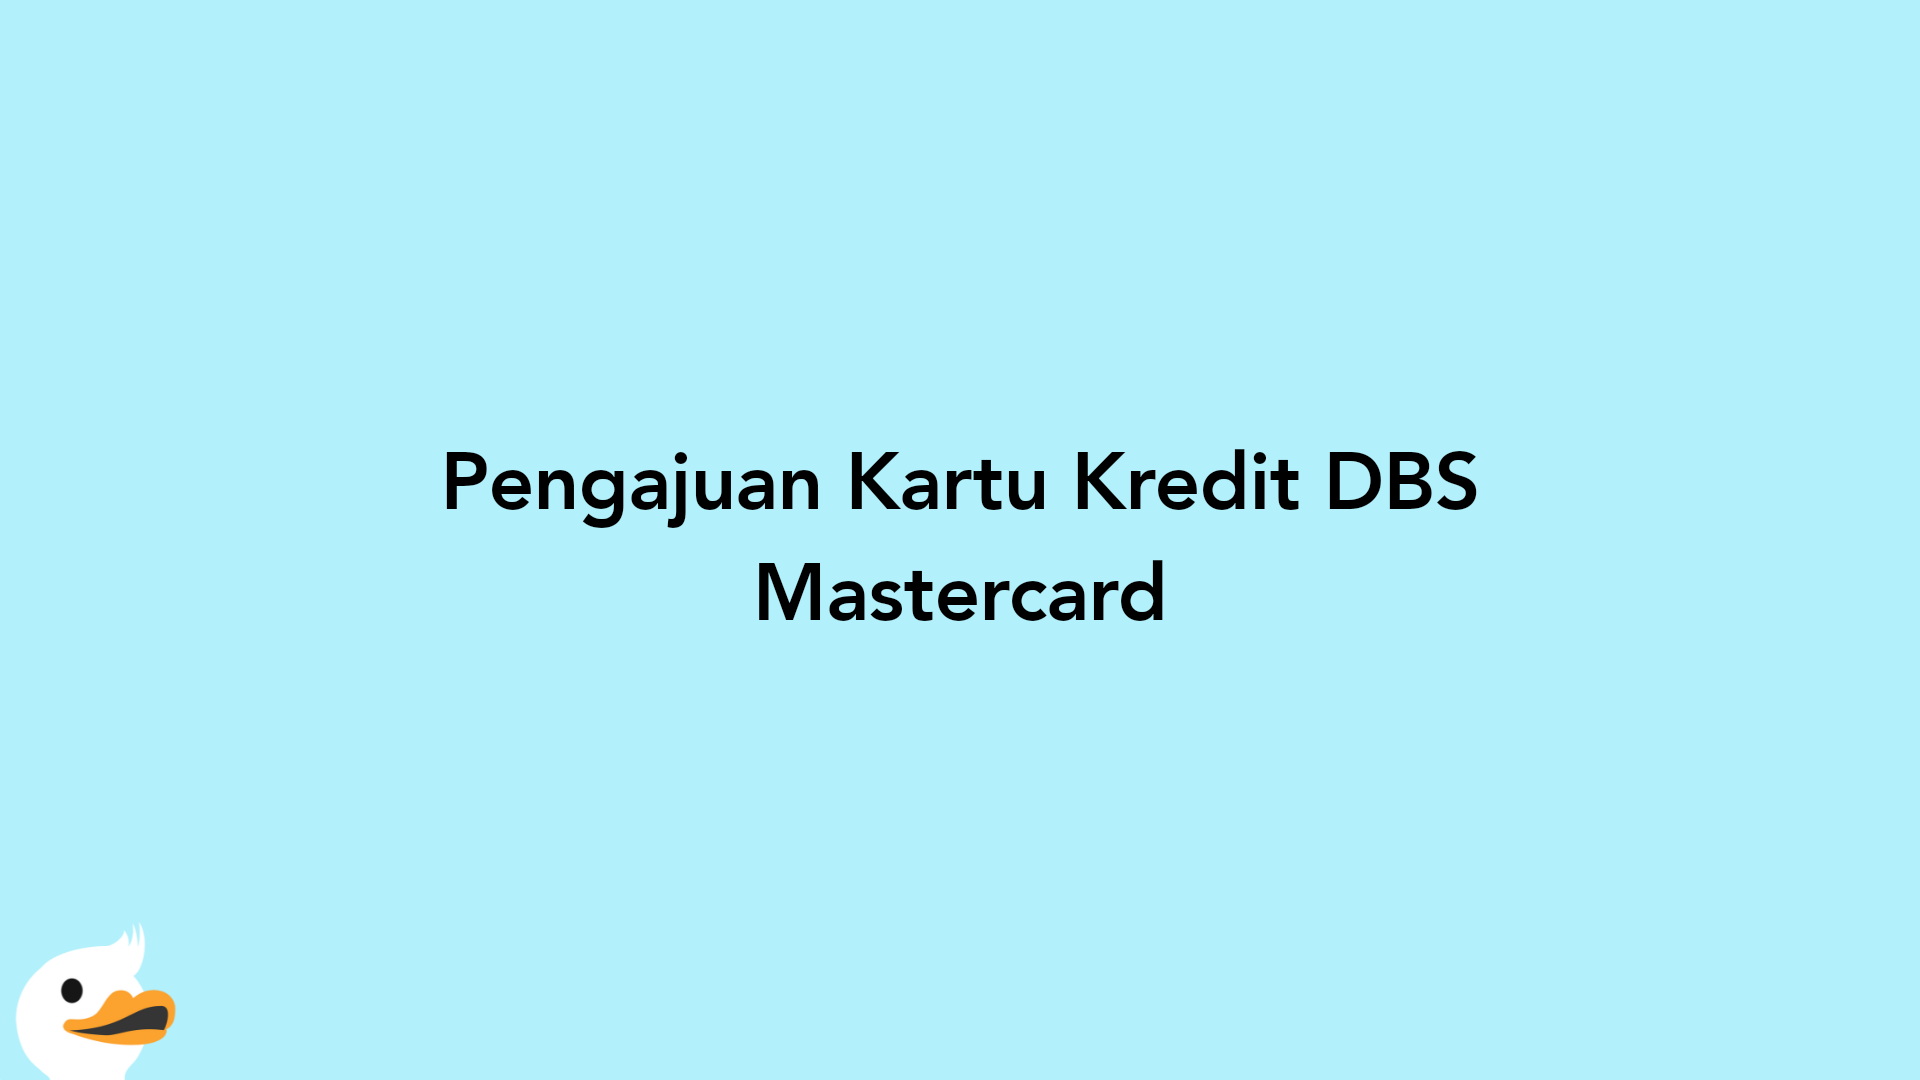 Pengajuan Kartu Kredit DBS Mastercard